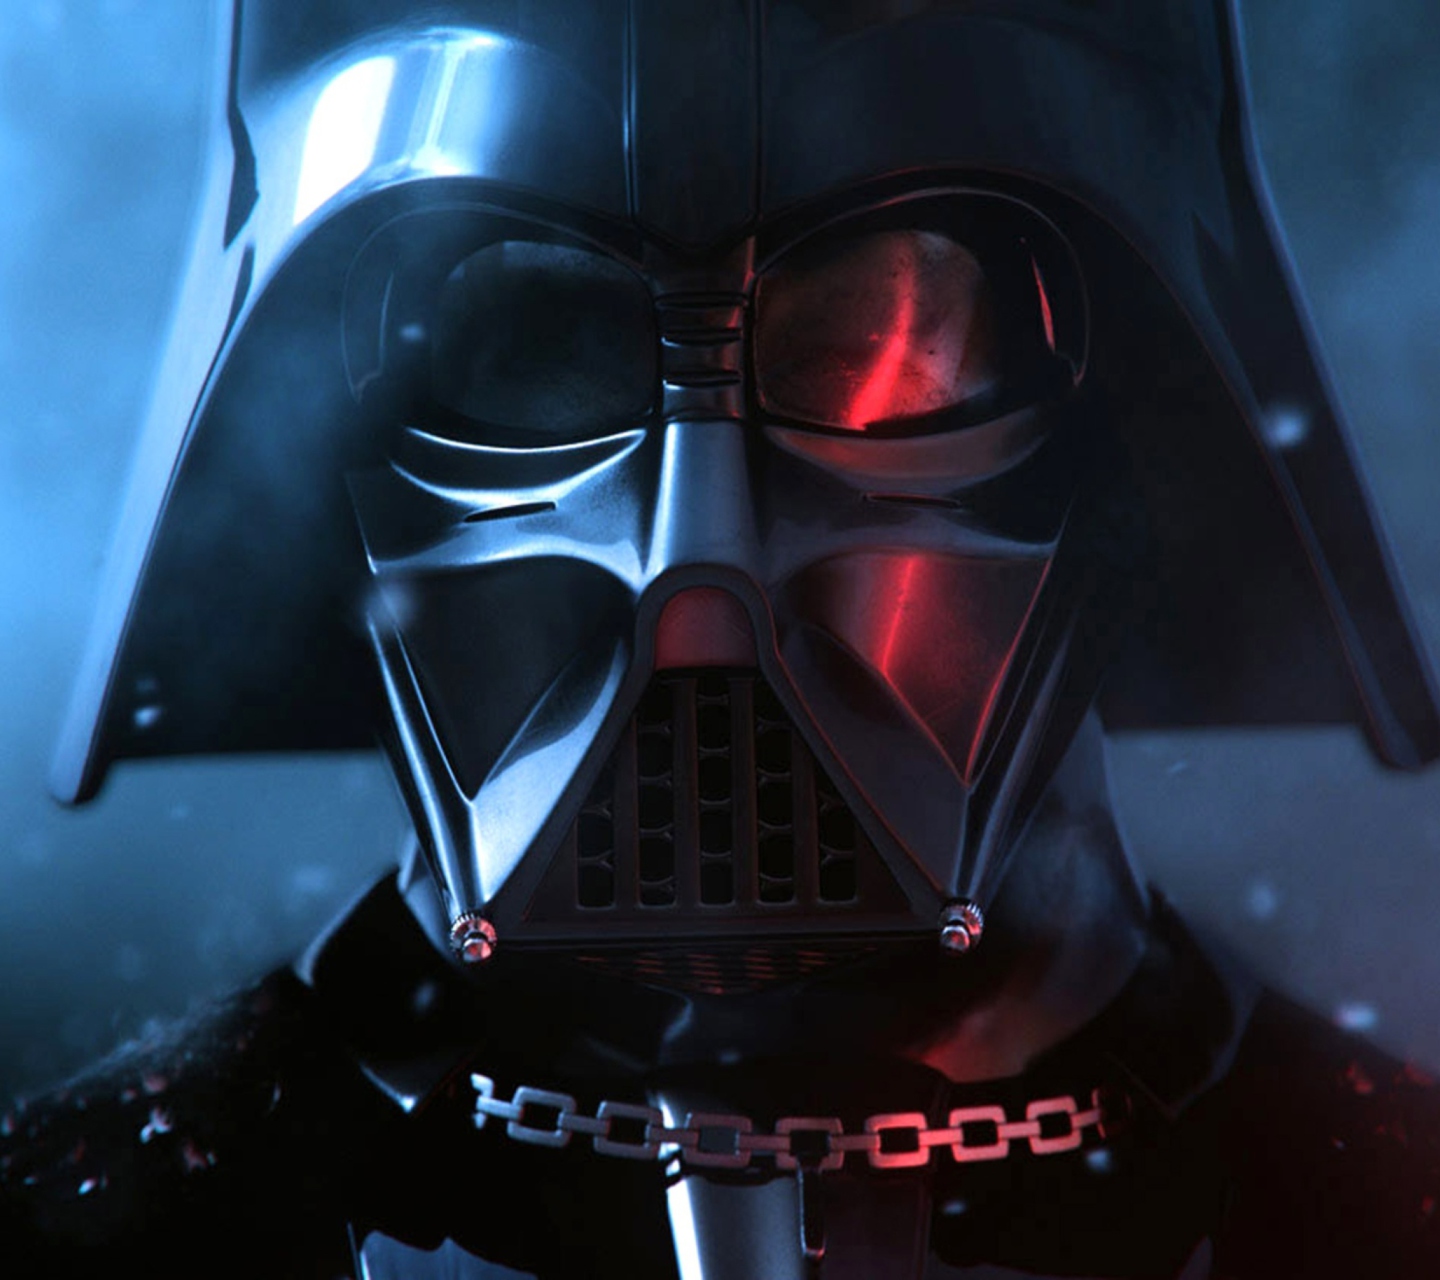 Sfondi Darth Vader 1440x1280